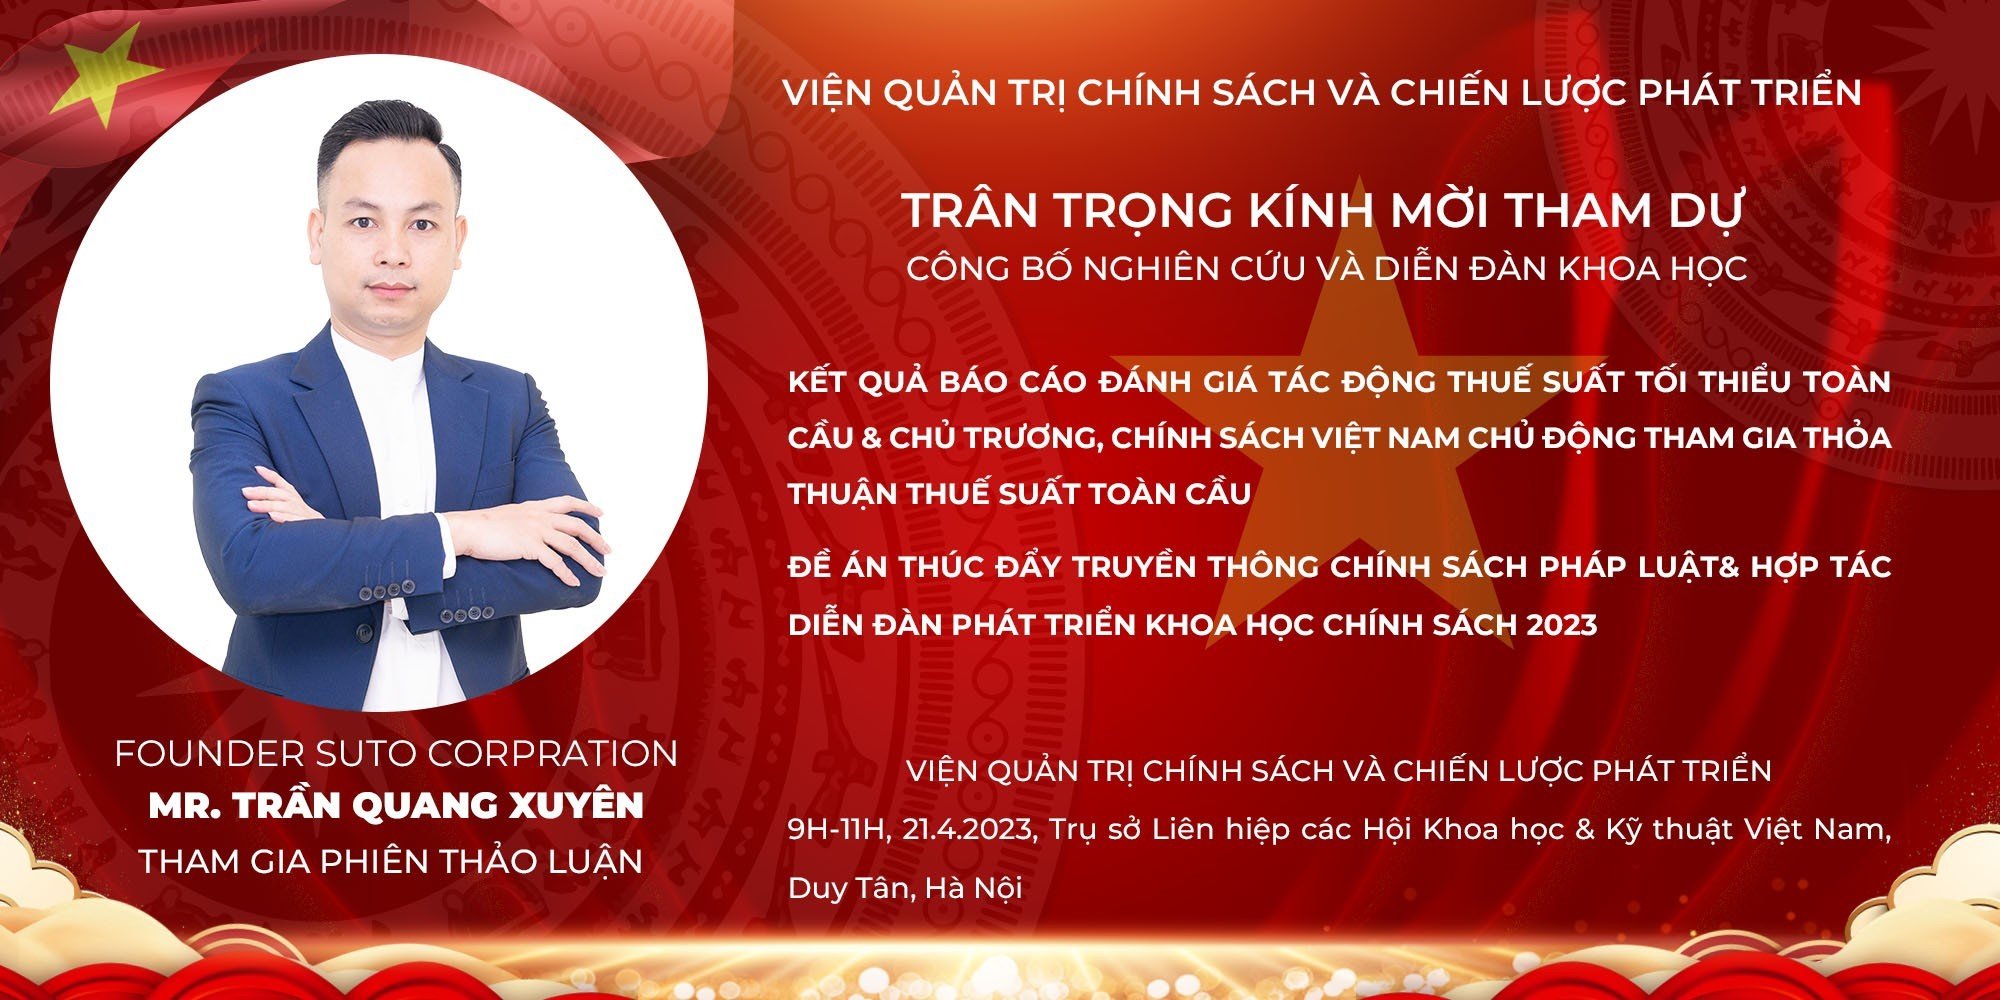 Chủ tịch Suto Corporation - ông Trần Quang Xuyên sẽ có buổi làm việc và phát biểu tại buổi toạ đàm của Viện Quản trị chính sách và chiến lược phát triển Việt Nam